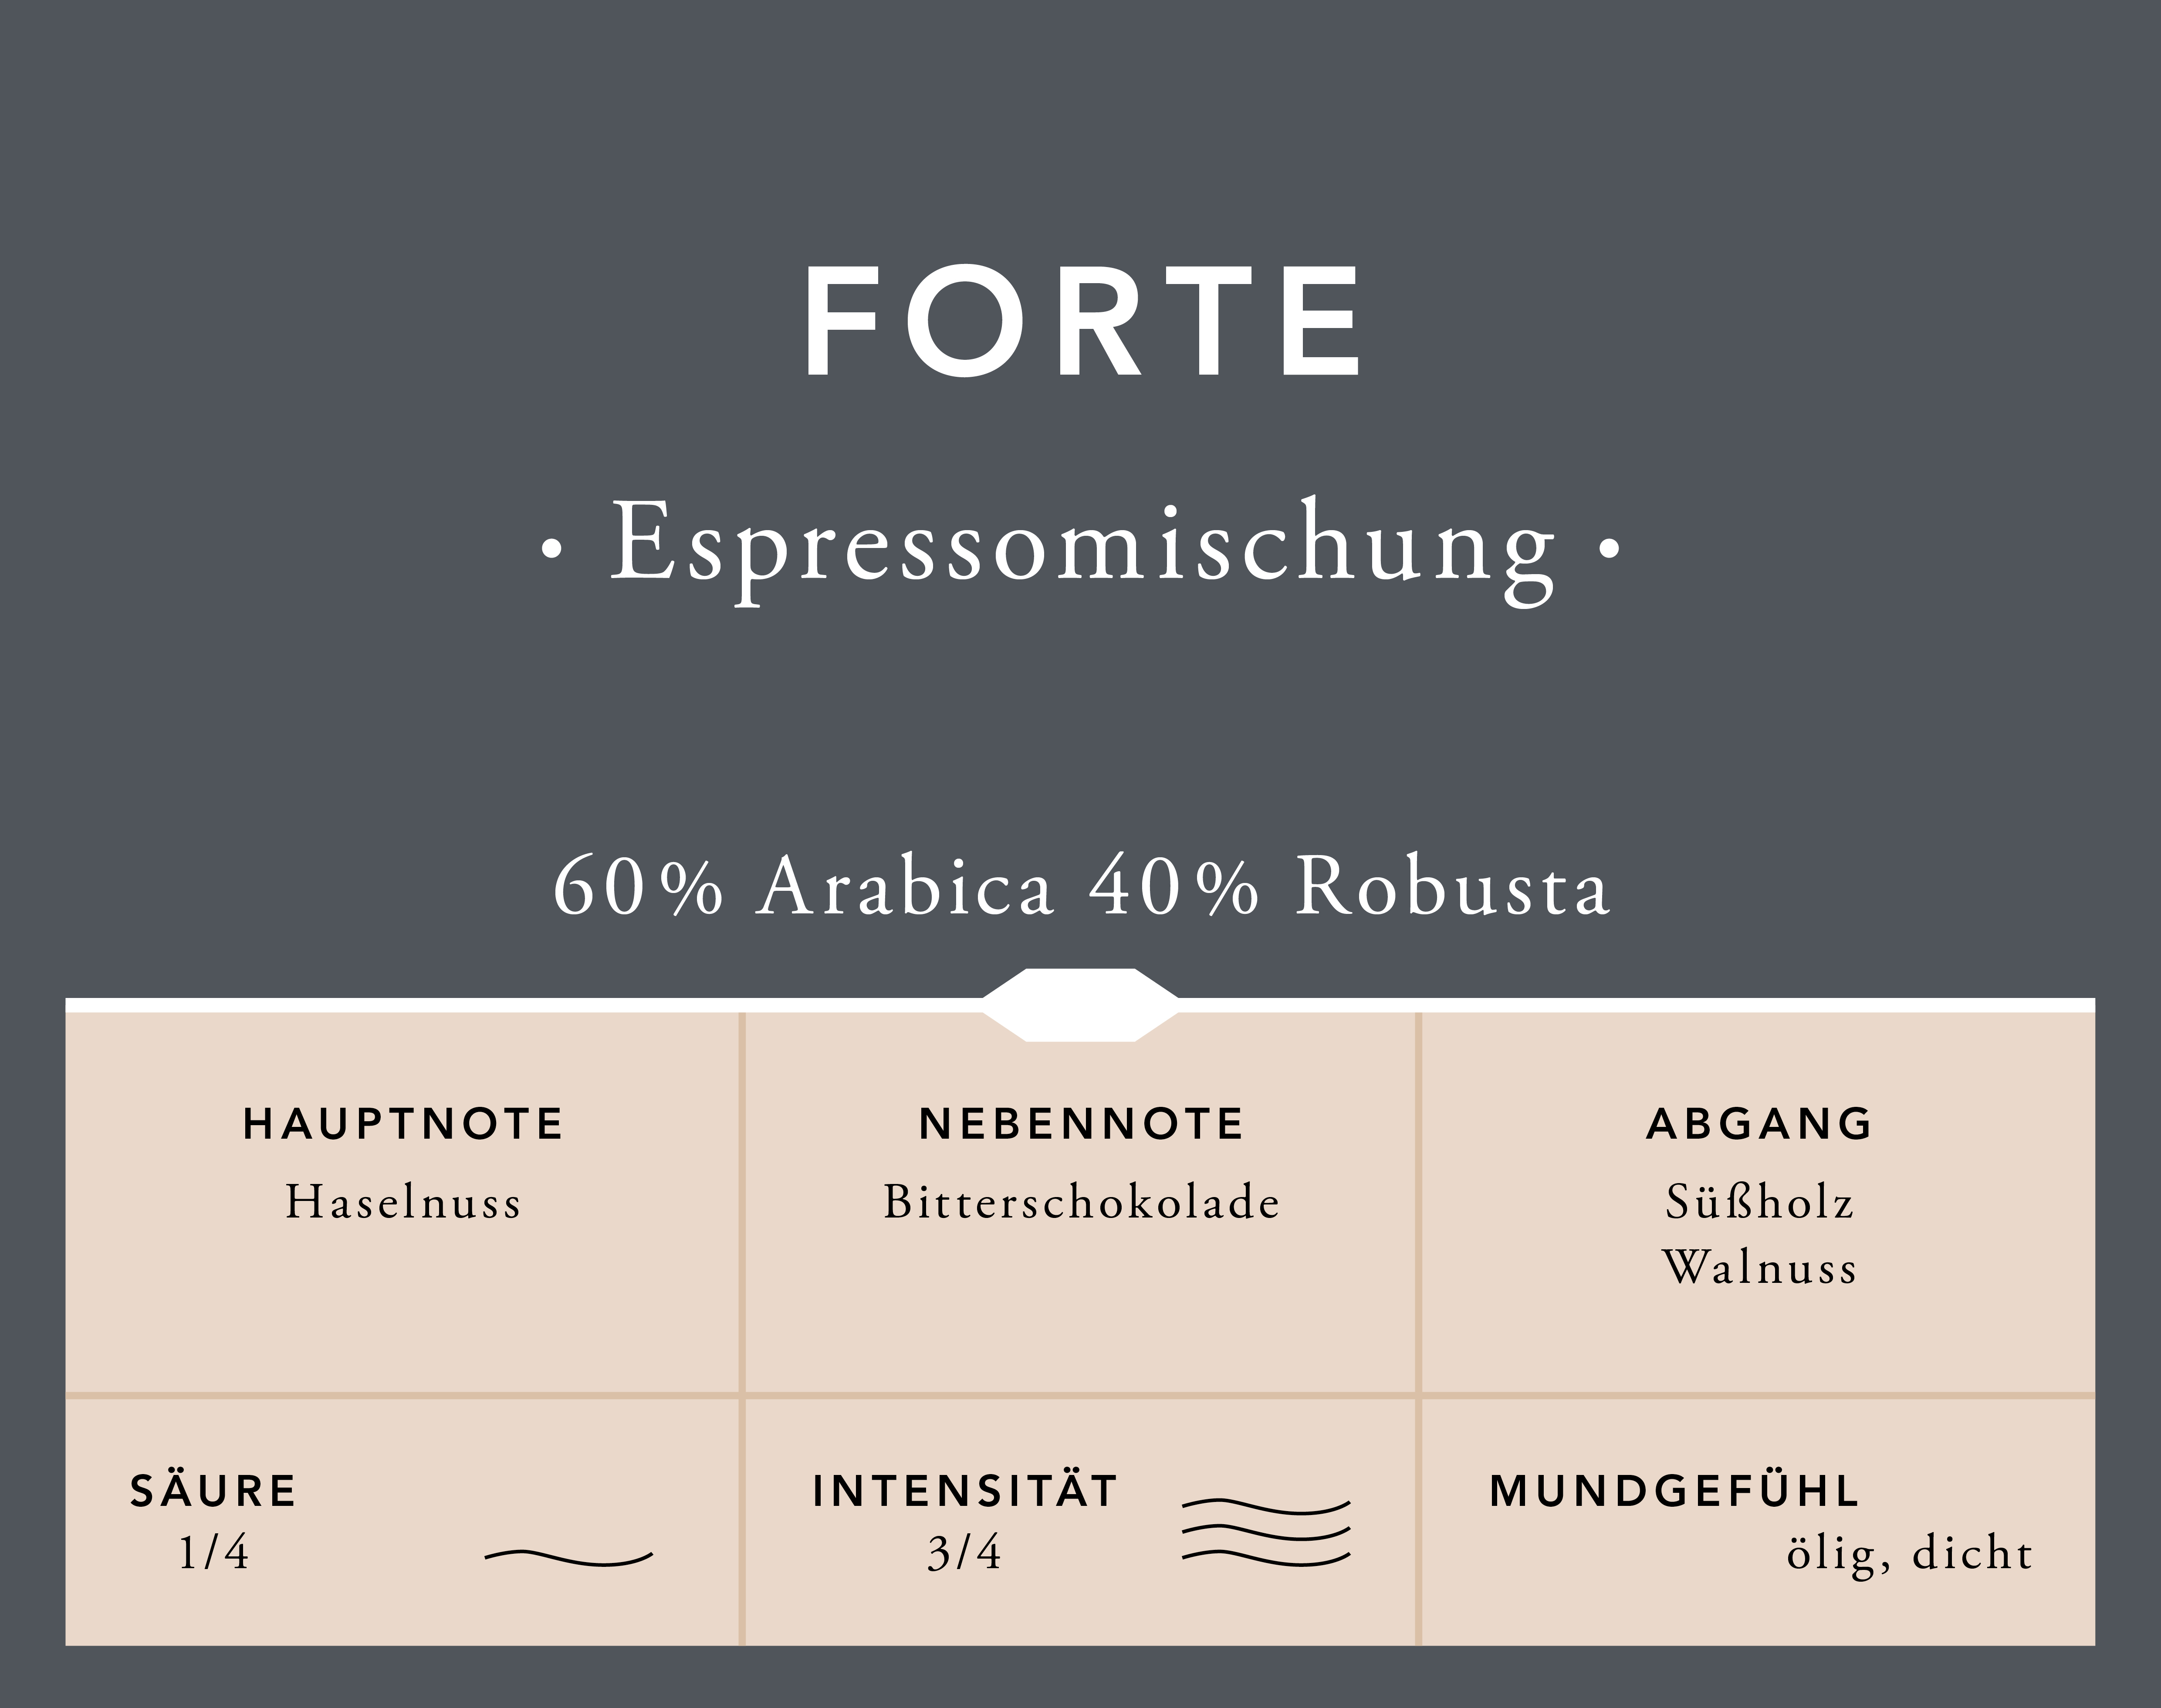 Speicherstadt Forte Espressomischung,3 Beutel ganze Bohne